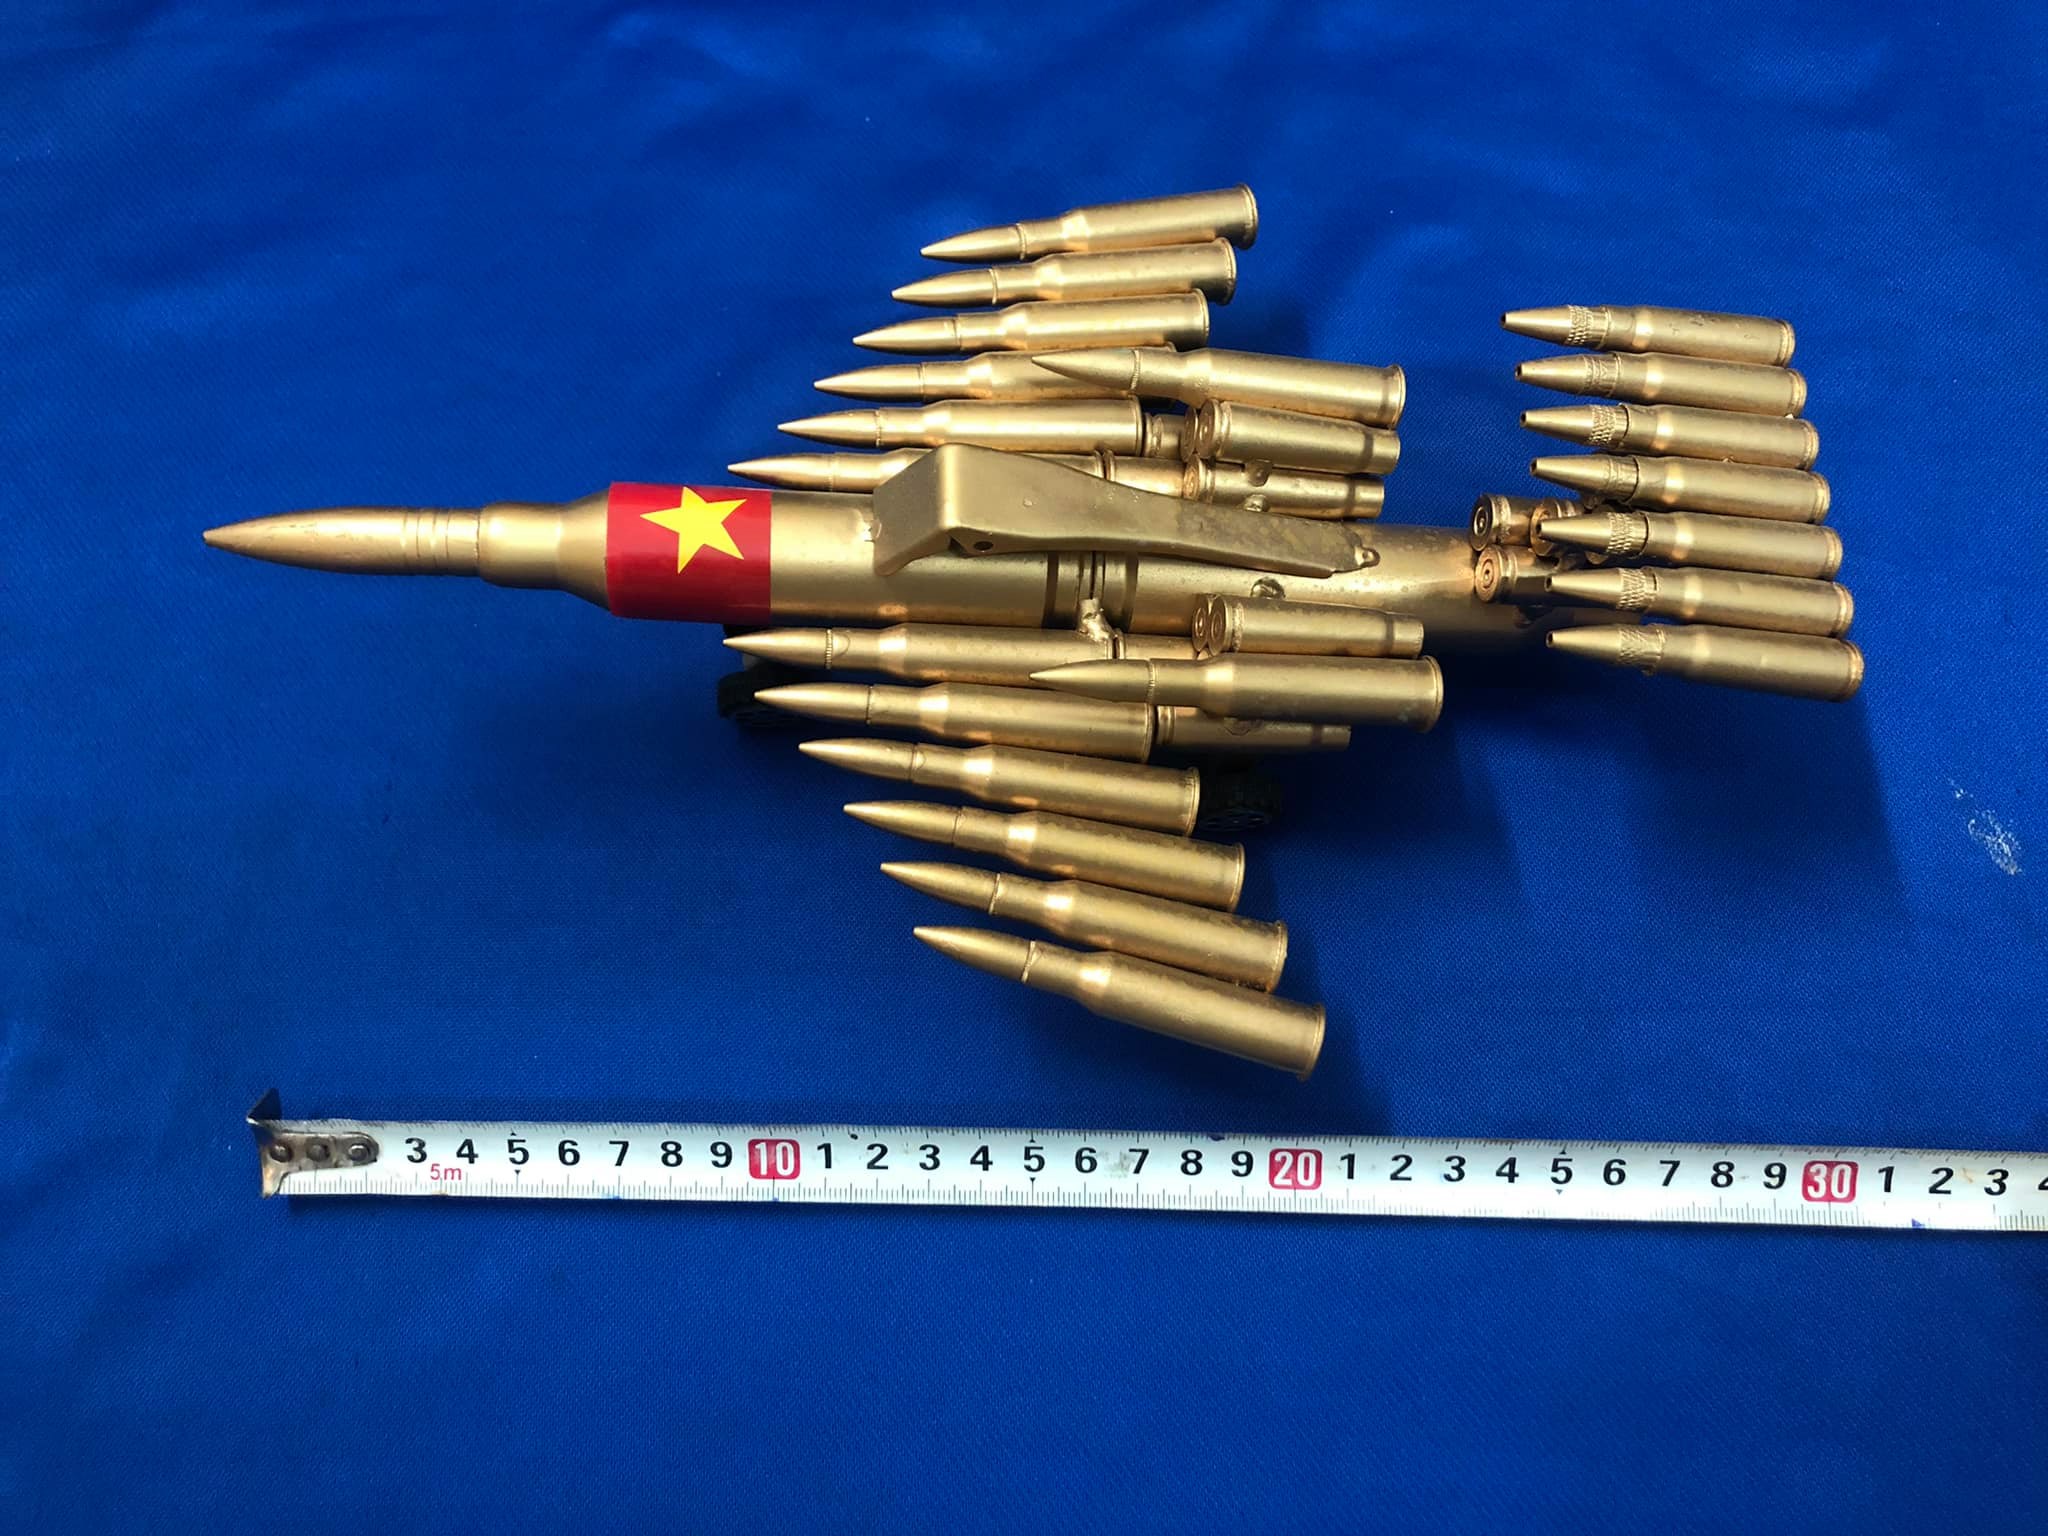 Mô hình vỏ đạn máy bay chiến đấu trưng bày, tặng 1 móc khóa viên đạn